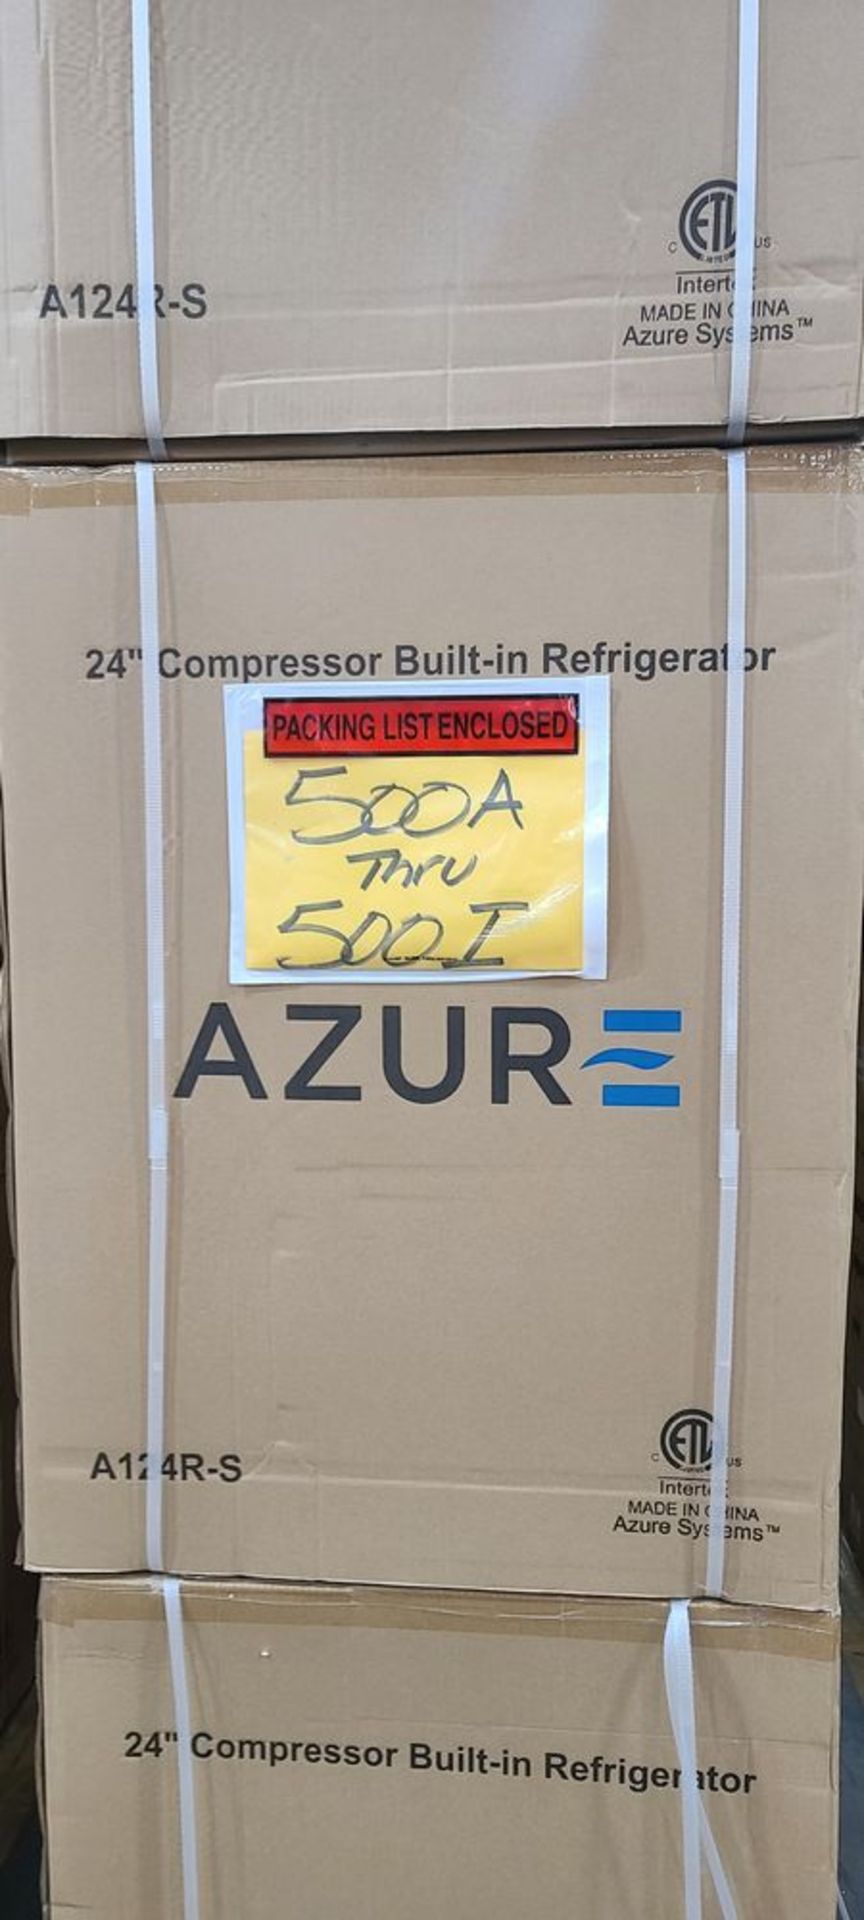 Azure Mod. 124R-S, AZ-24" Refrigerator w/ S.S. Door - Image 2 of 3